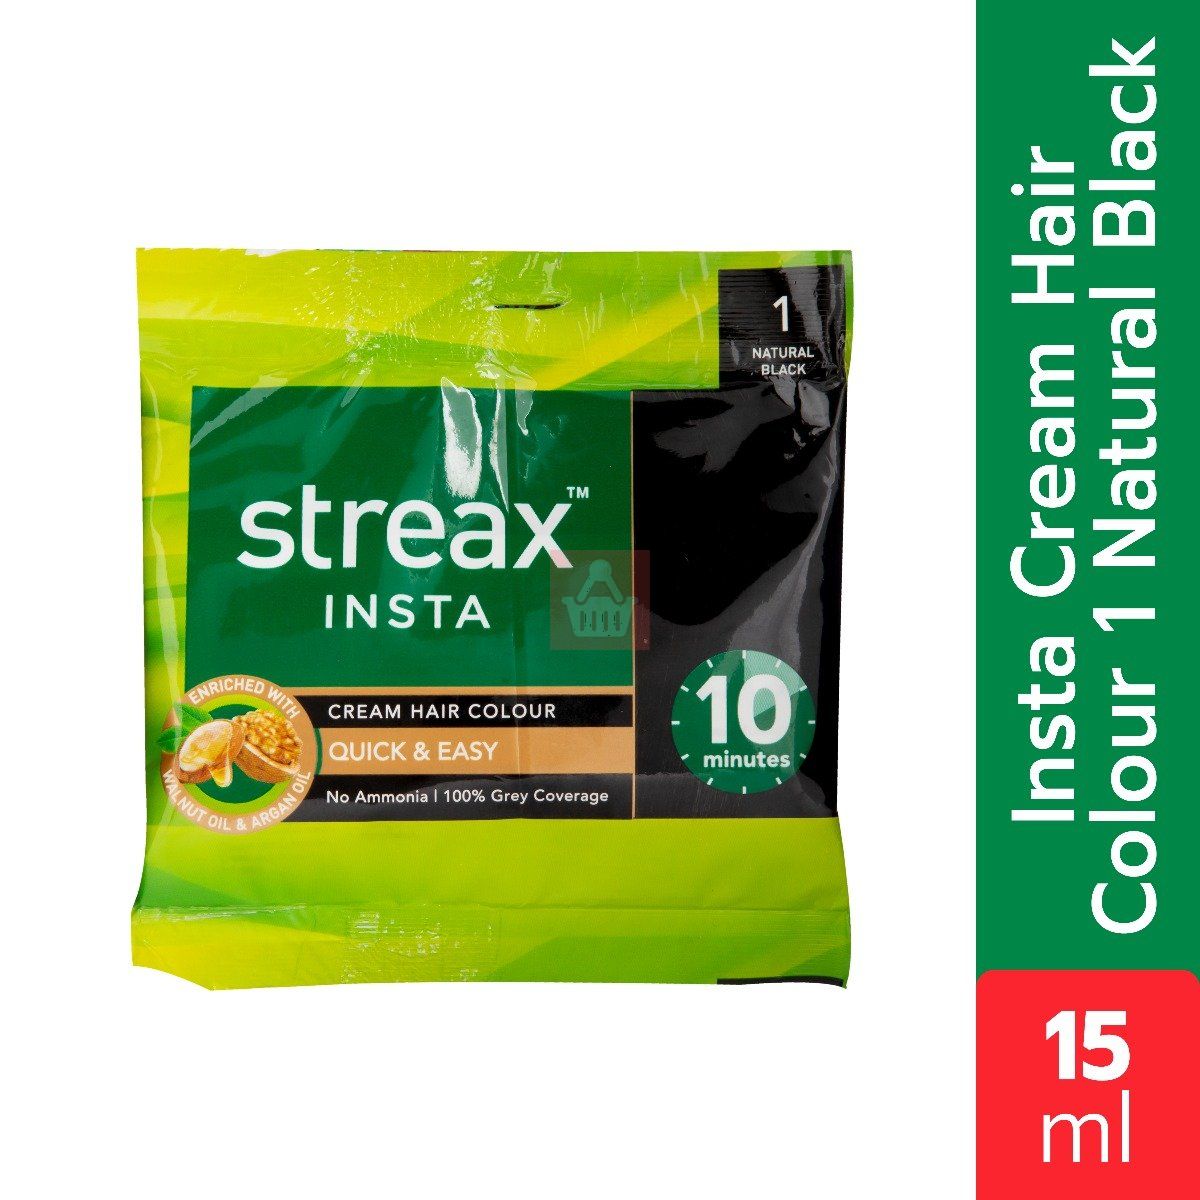 Streax Insta Cream Hair Colour 1 Natural Black - 15ml